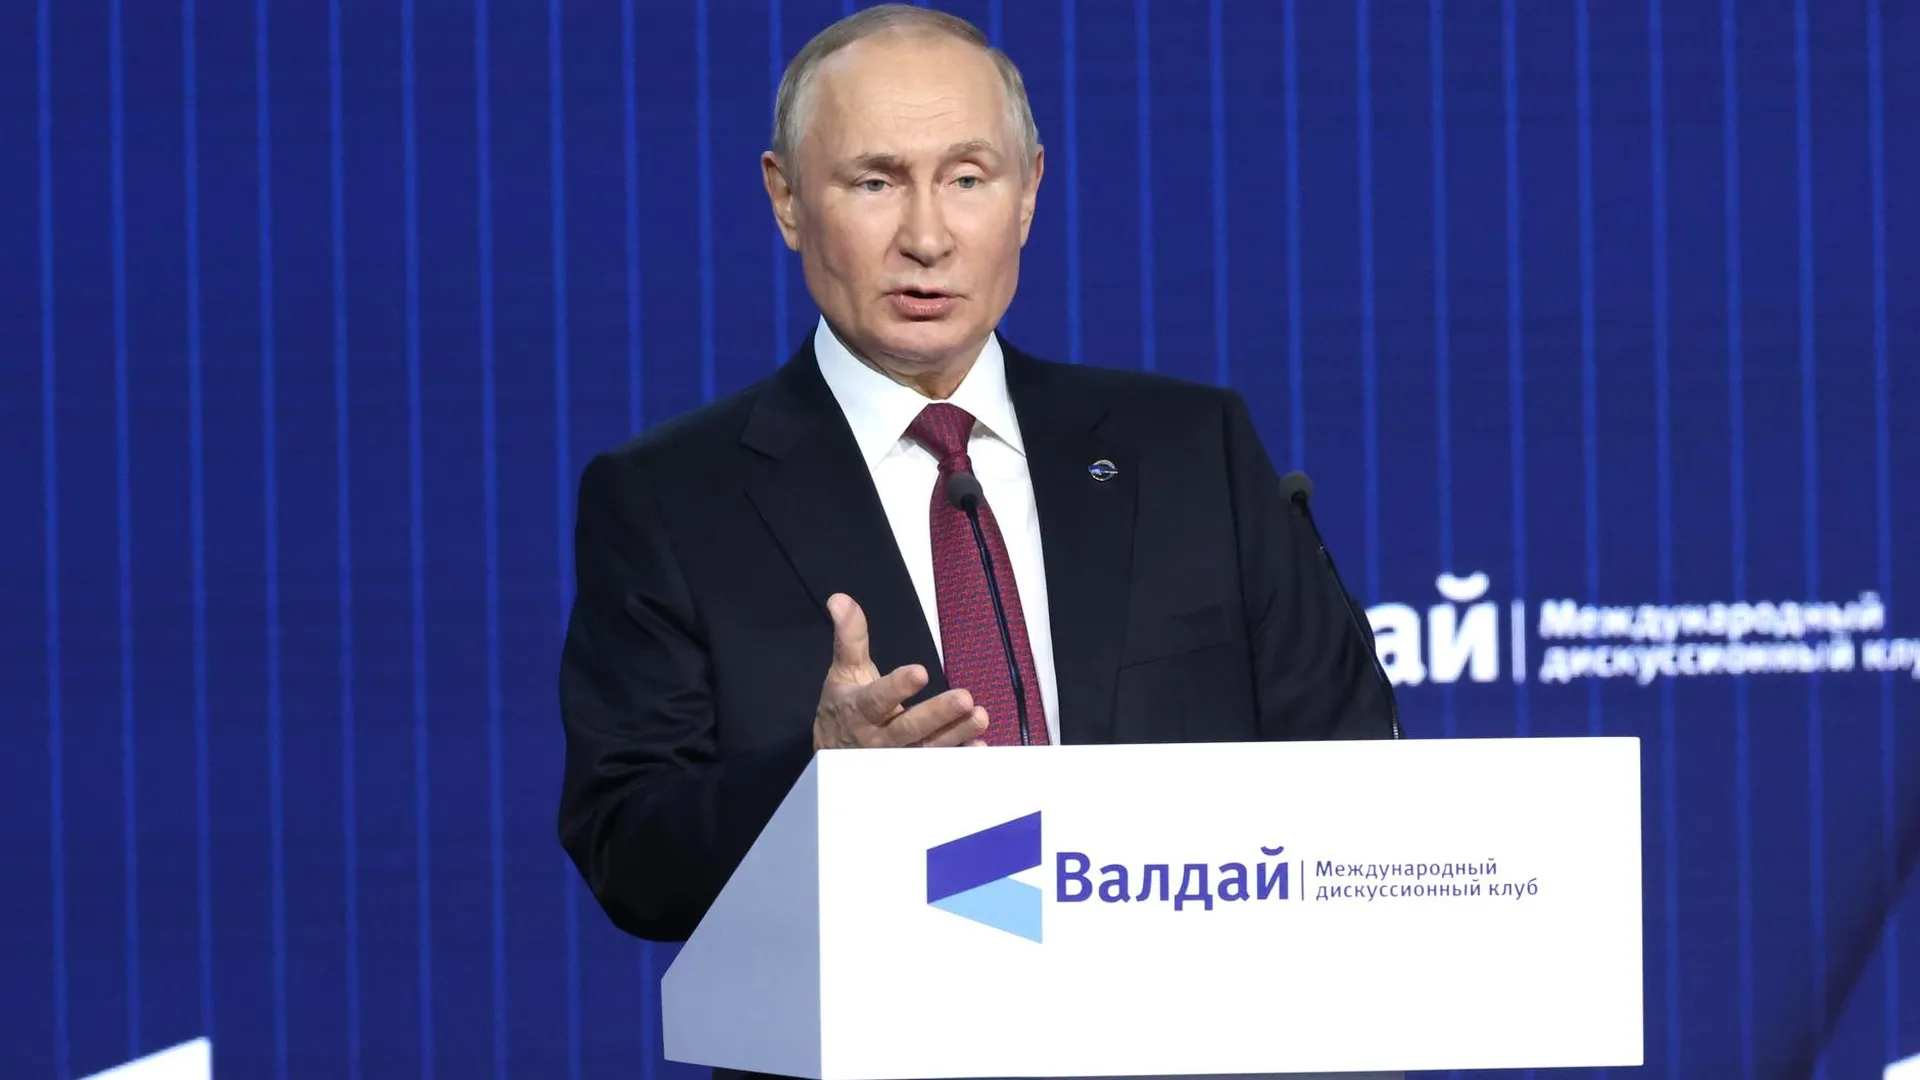 Проблема излишней централизации федеральных структур в Москве существует — Путин